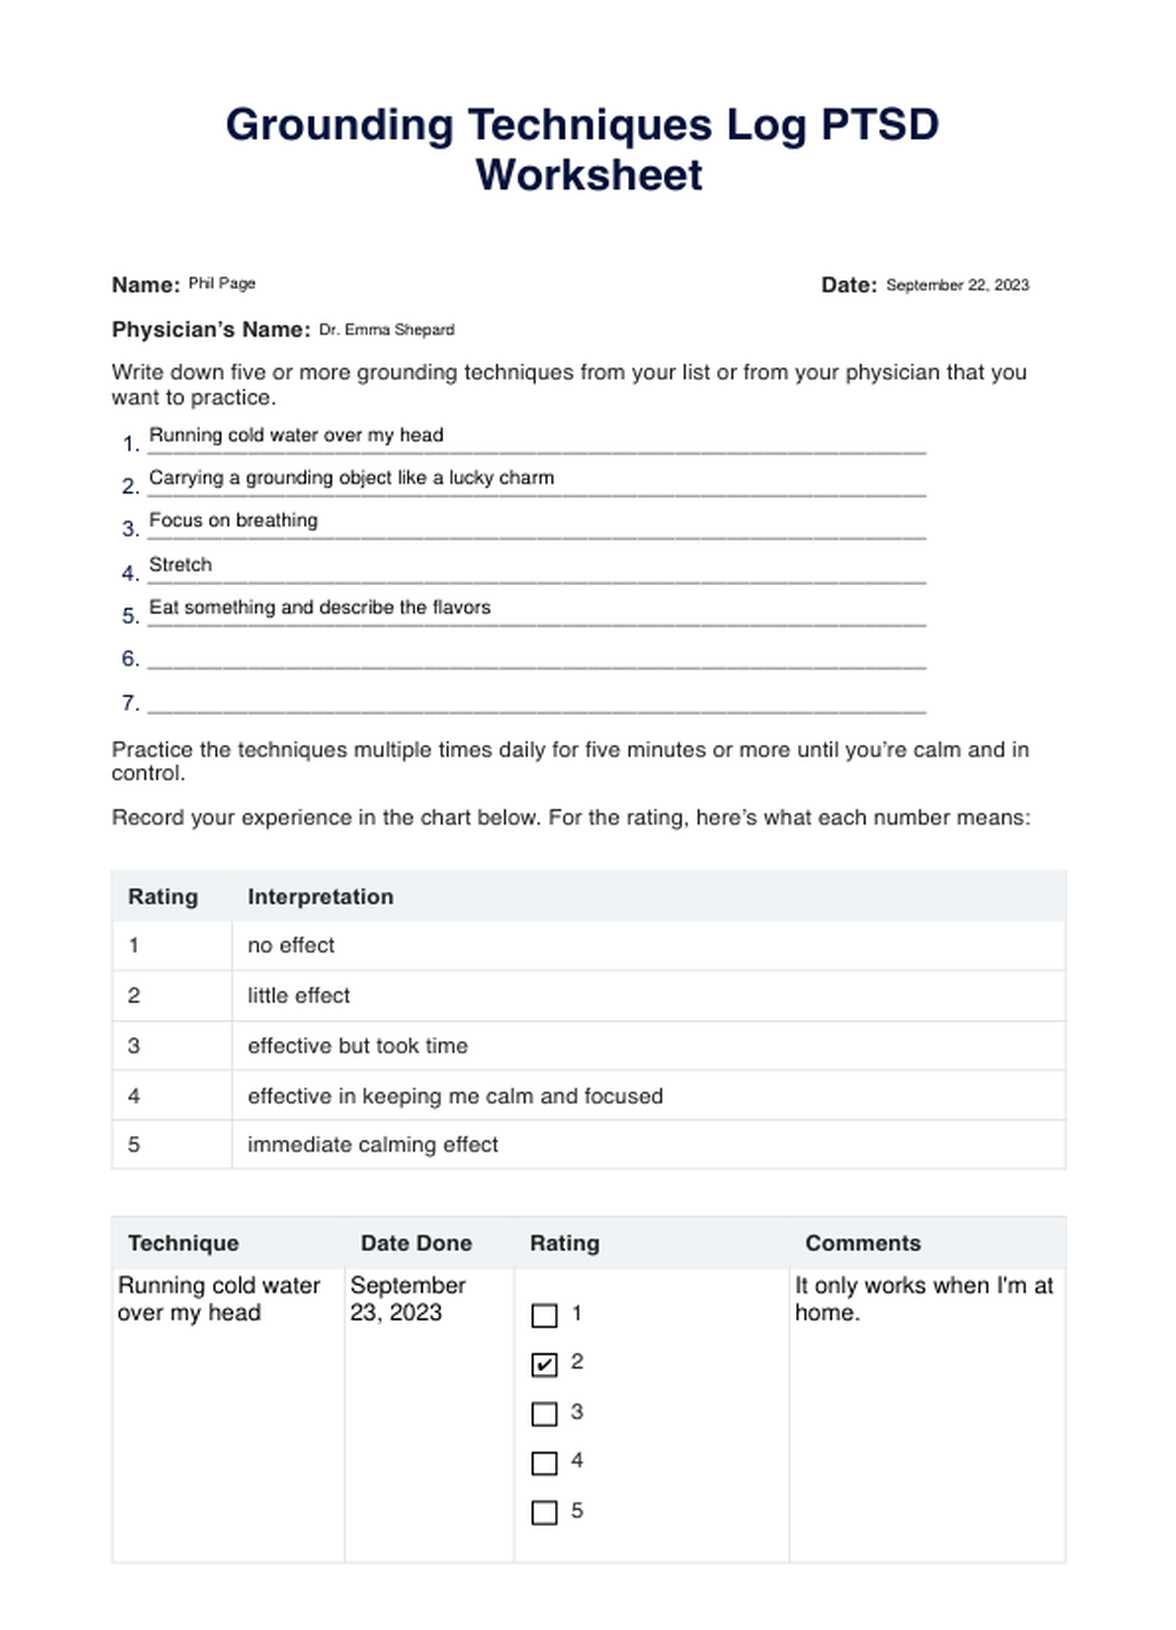 Grounding Techniques Log PTSD Worksheet PDF Example